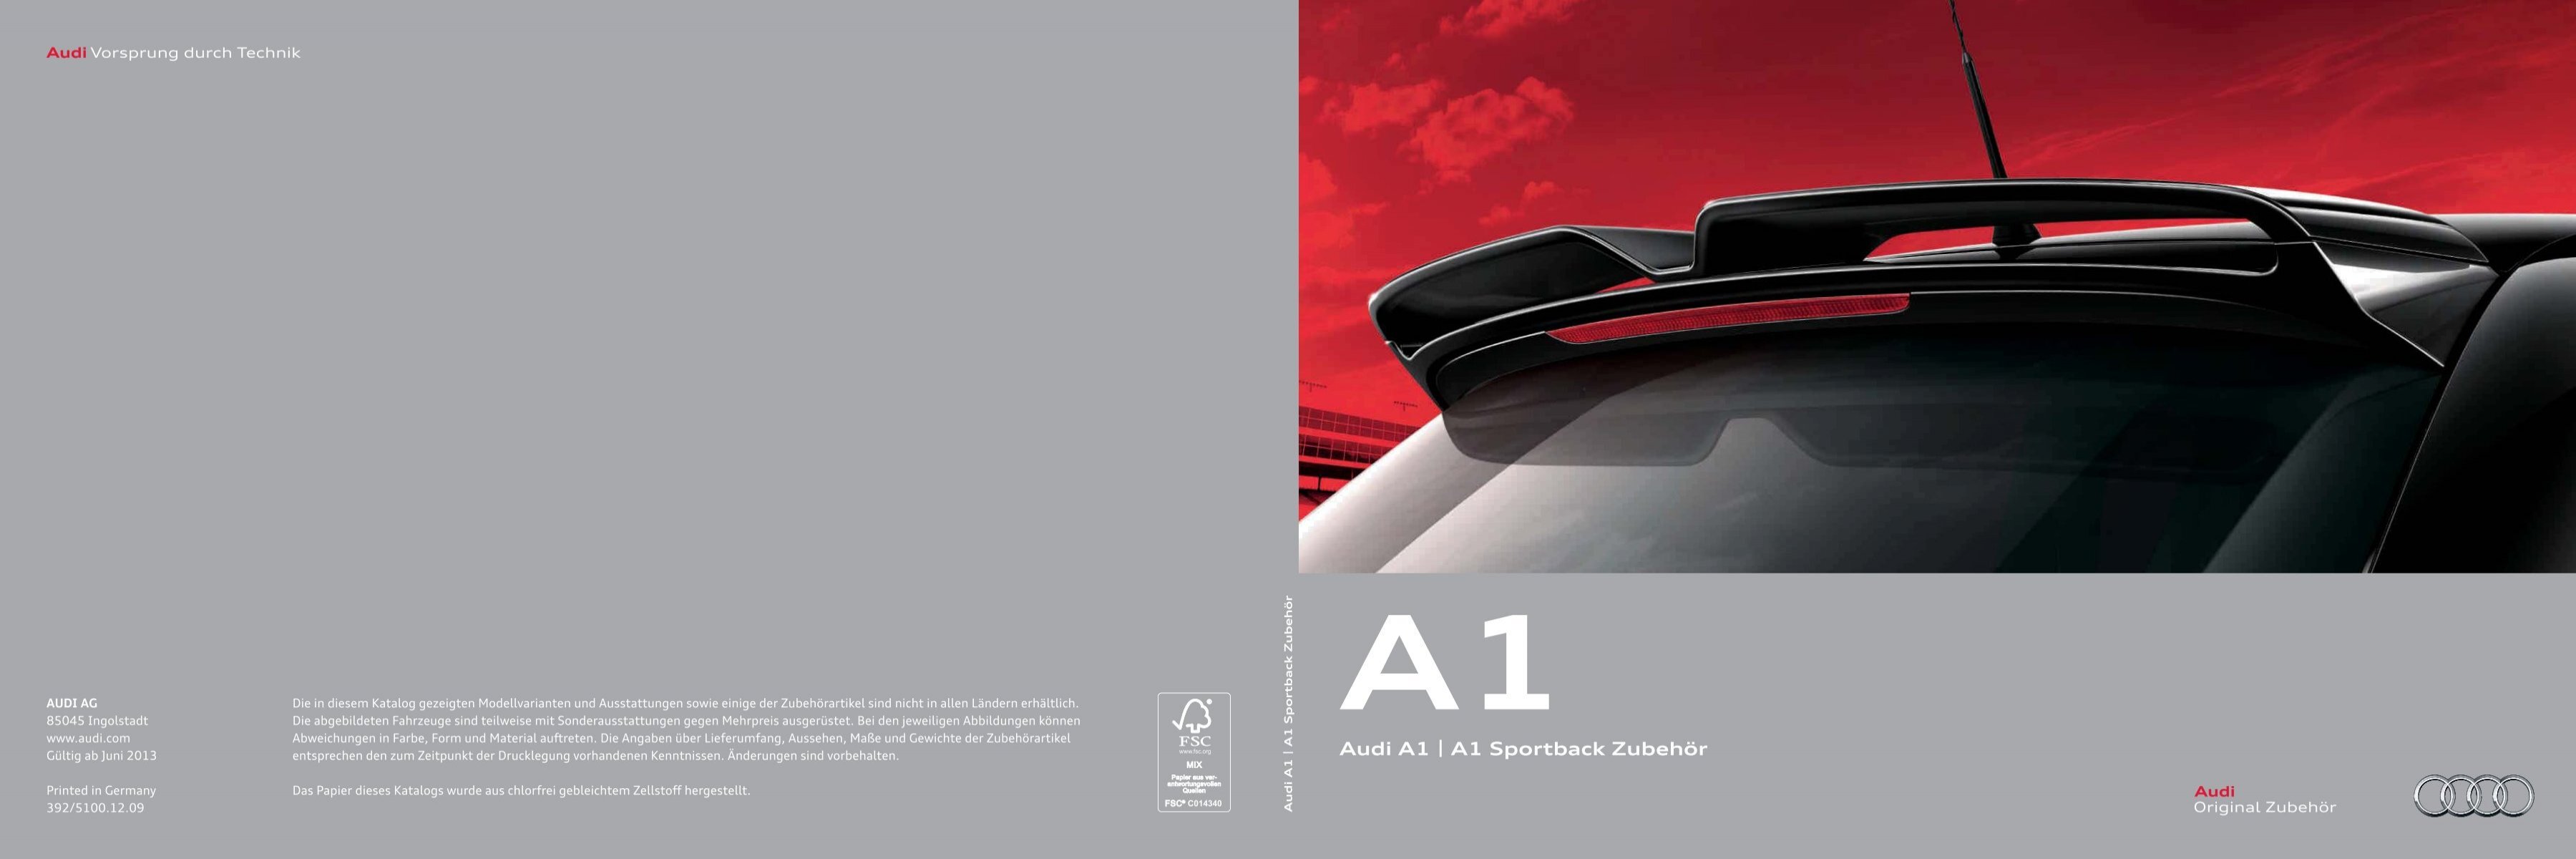 A1 ZubehÃ¶rkatalog (7 MB) - Audi